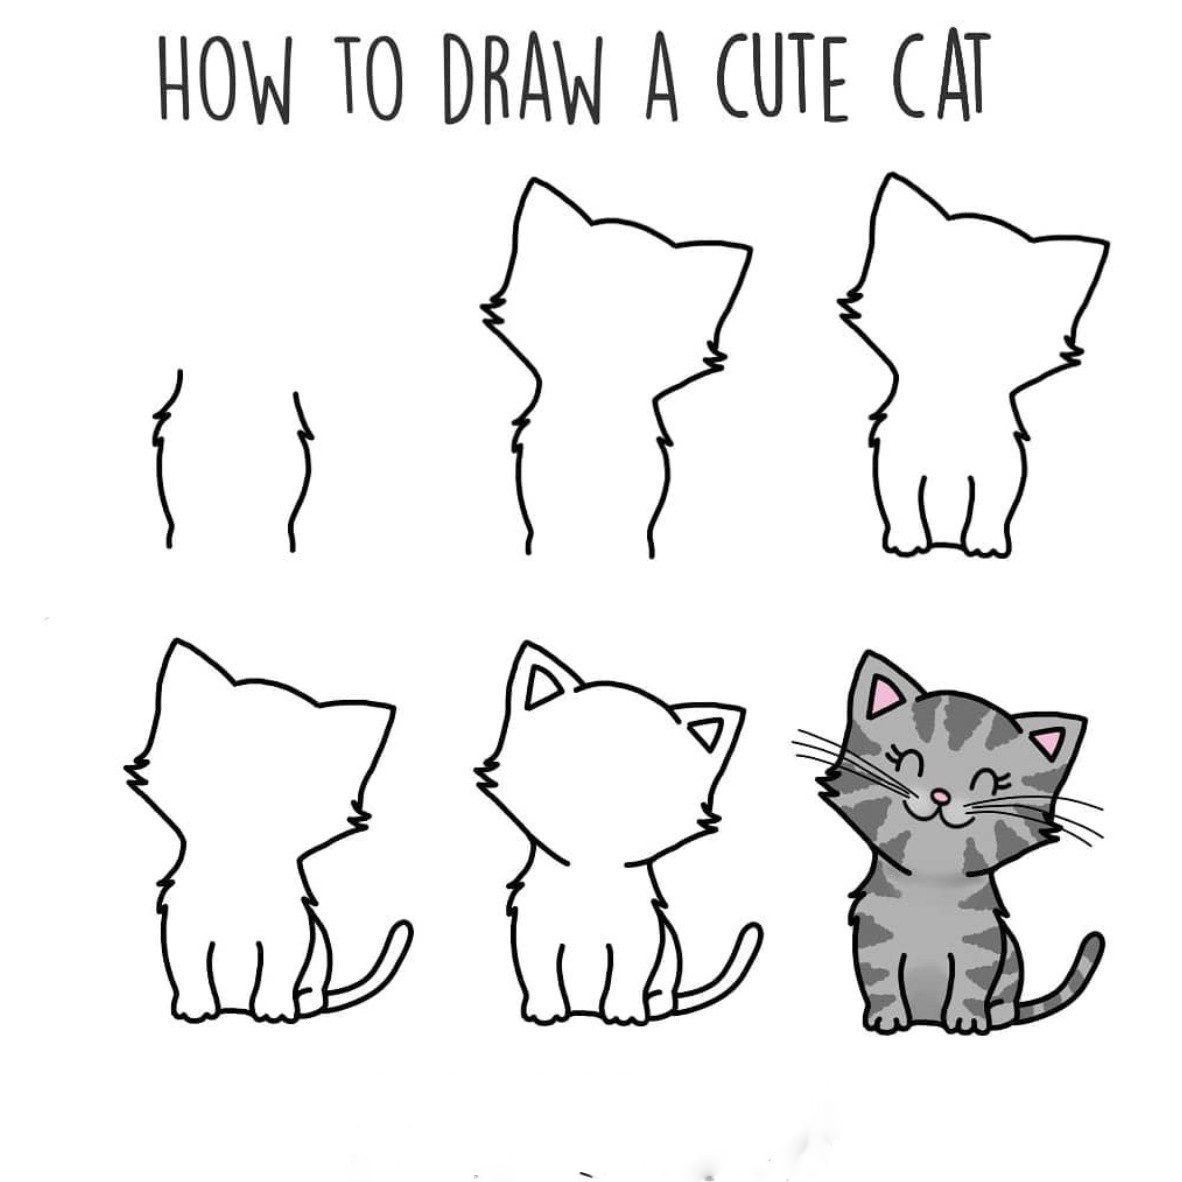 Bạn có thể biết cách vẽ một con mèo đơn giản mà không cần có kỹ năng vẽ chuyên nghiệp. Bức tranh đơn giản liên quan đến từ khóa này sẽ hướng dẫn bạn cách vẽ một con mèo đáng yêu chỉ trong vài bước đơn giản. Nó sẽ giúp bạn trở thành một người hâm mộ của nghệ thuật vẽ mèo trước khi bạn biết được rồi.